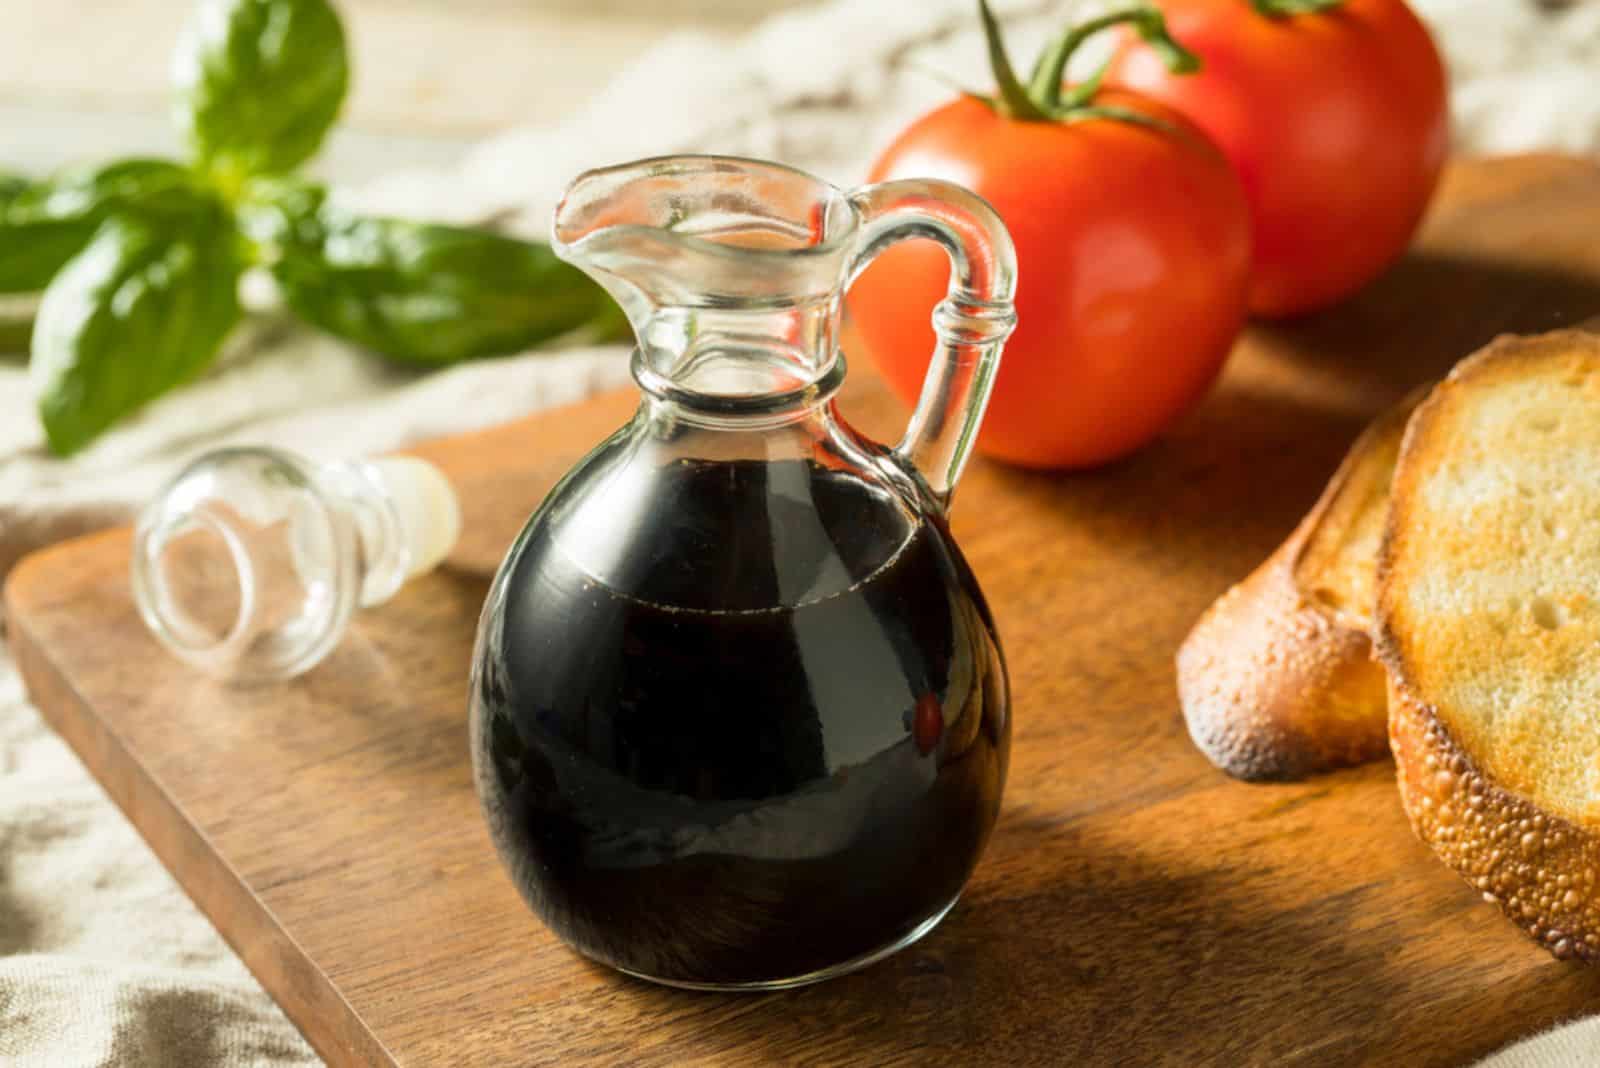 Organic Black Balsamic Vinegar in a Bottle